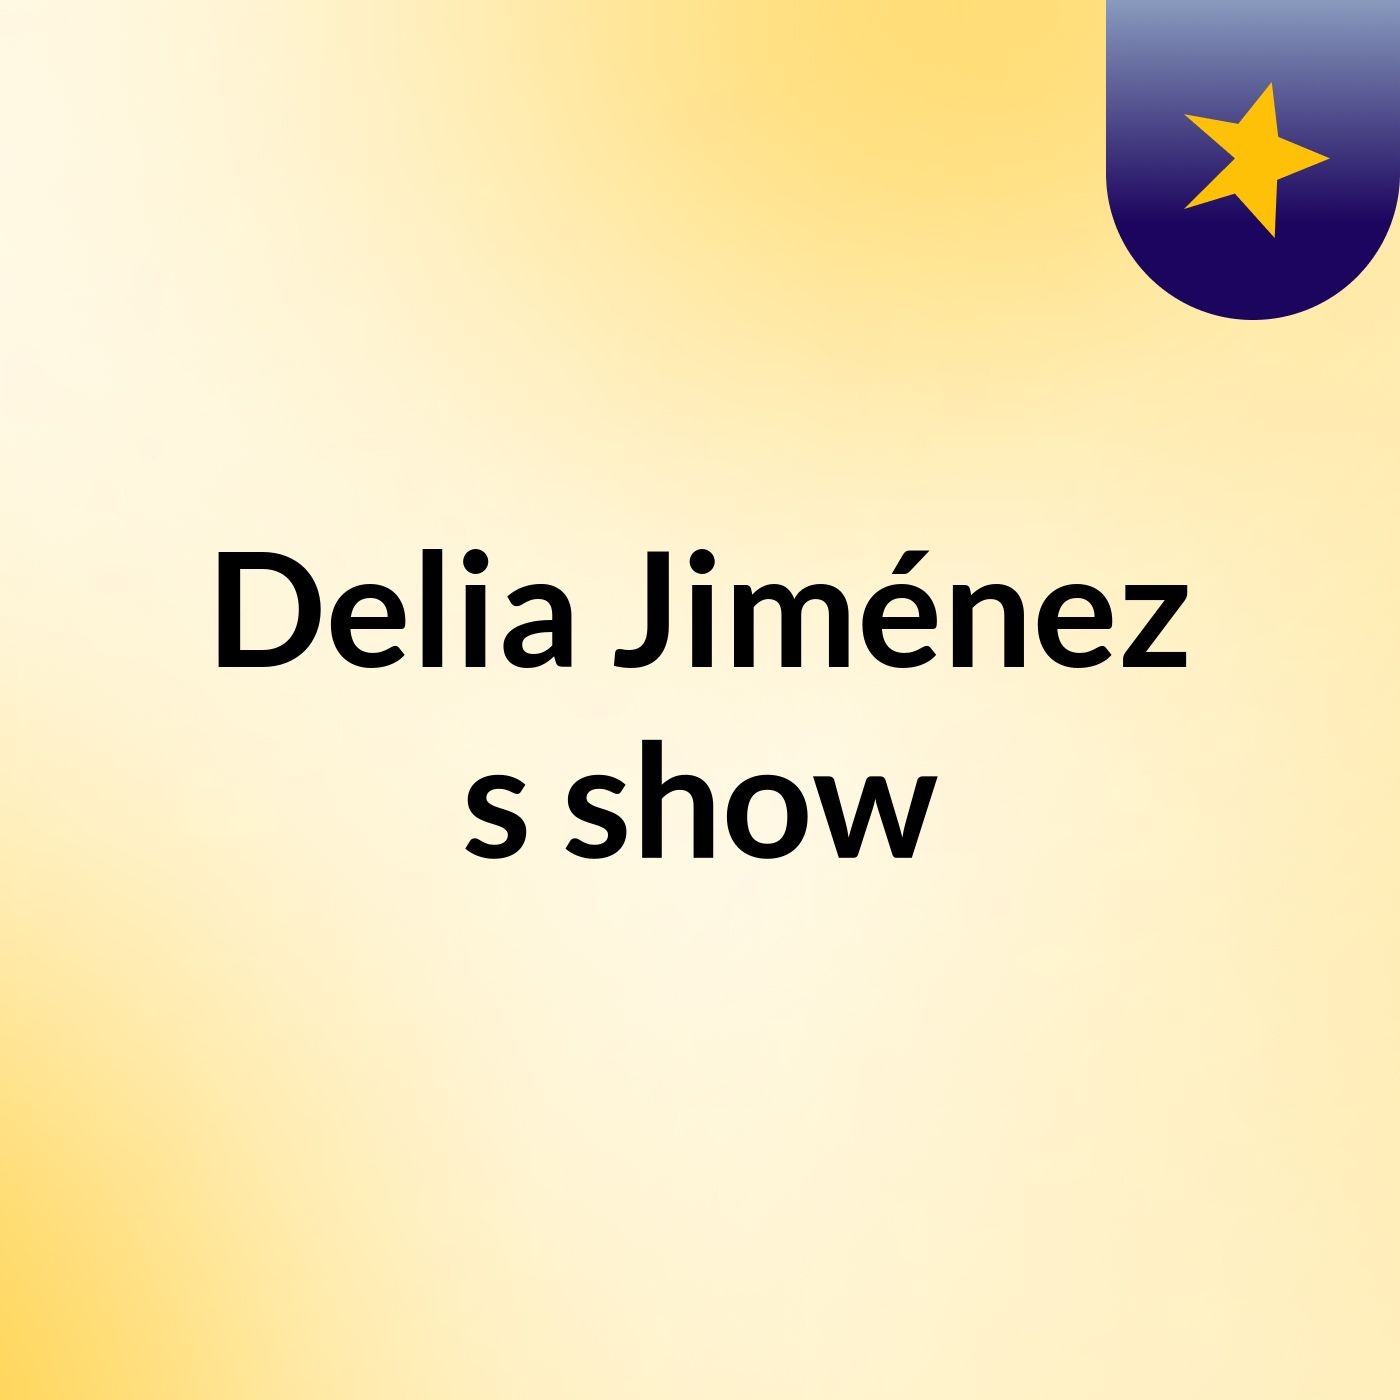 Delia Jiménez's show